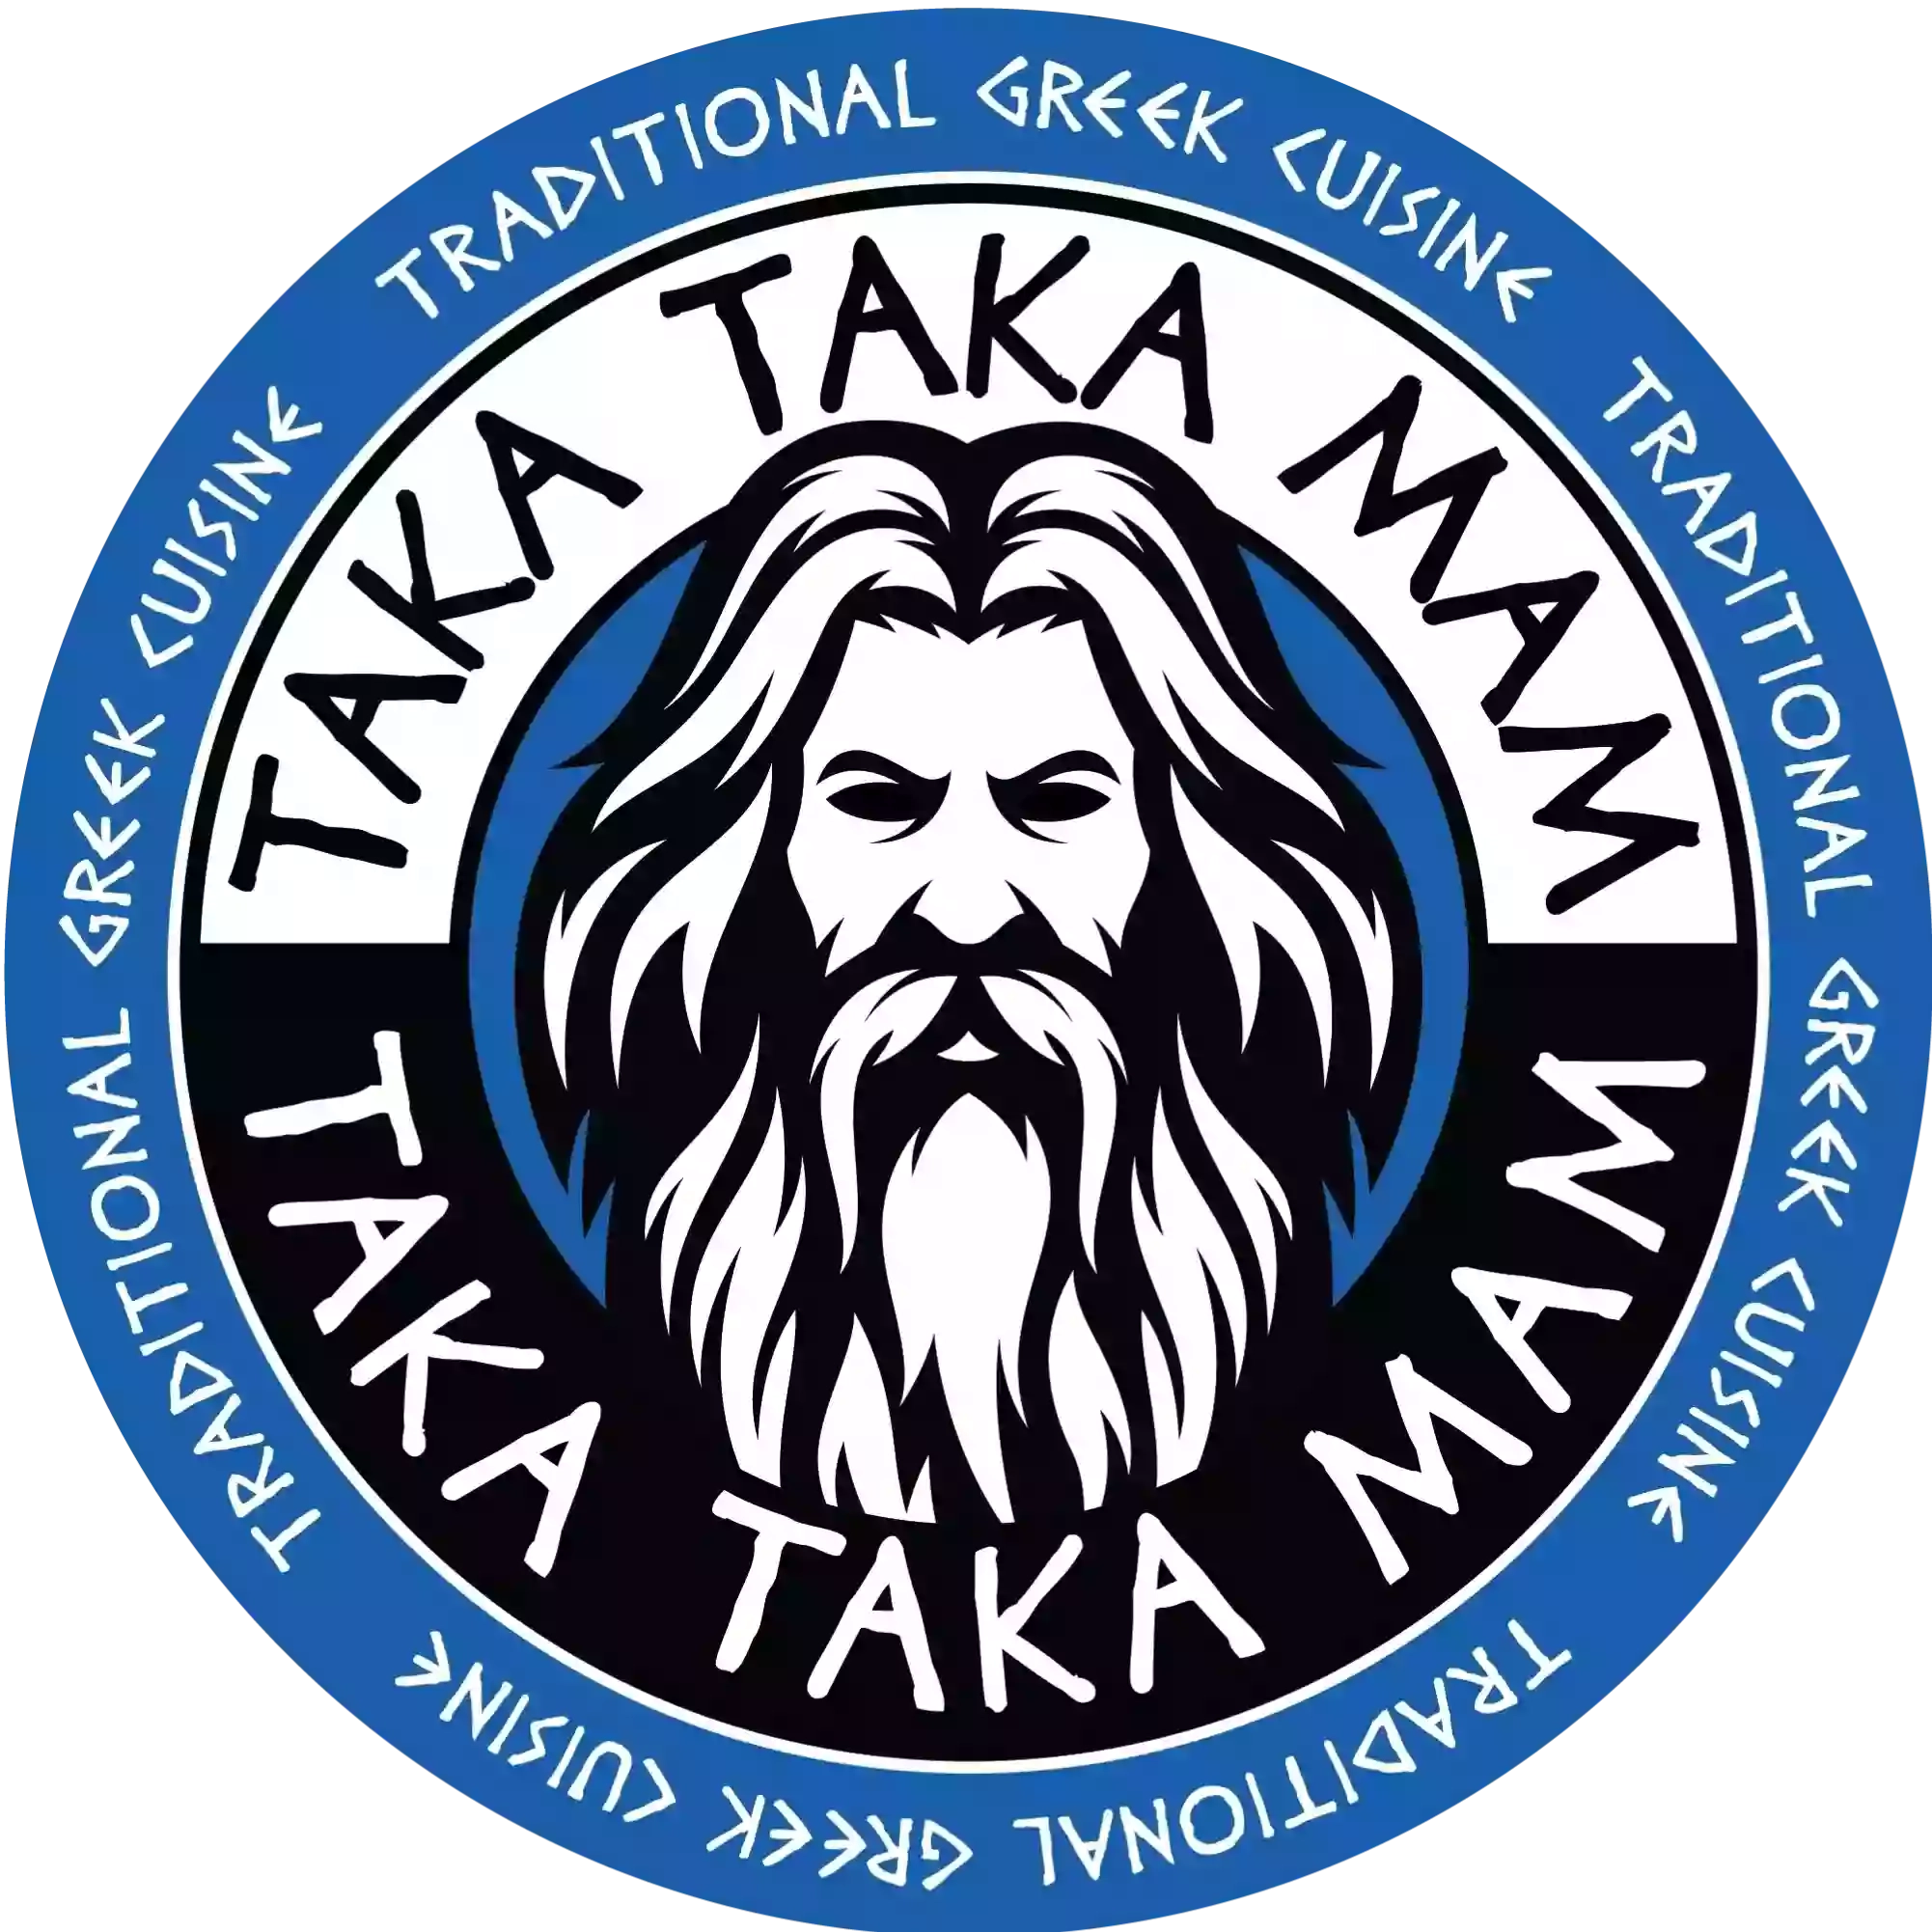 Taka Taka Mam